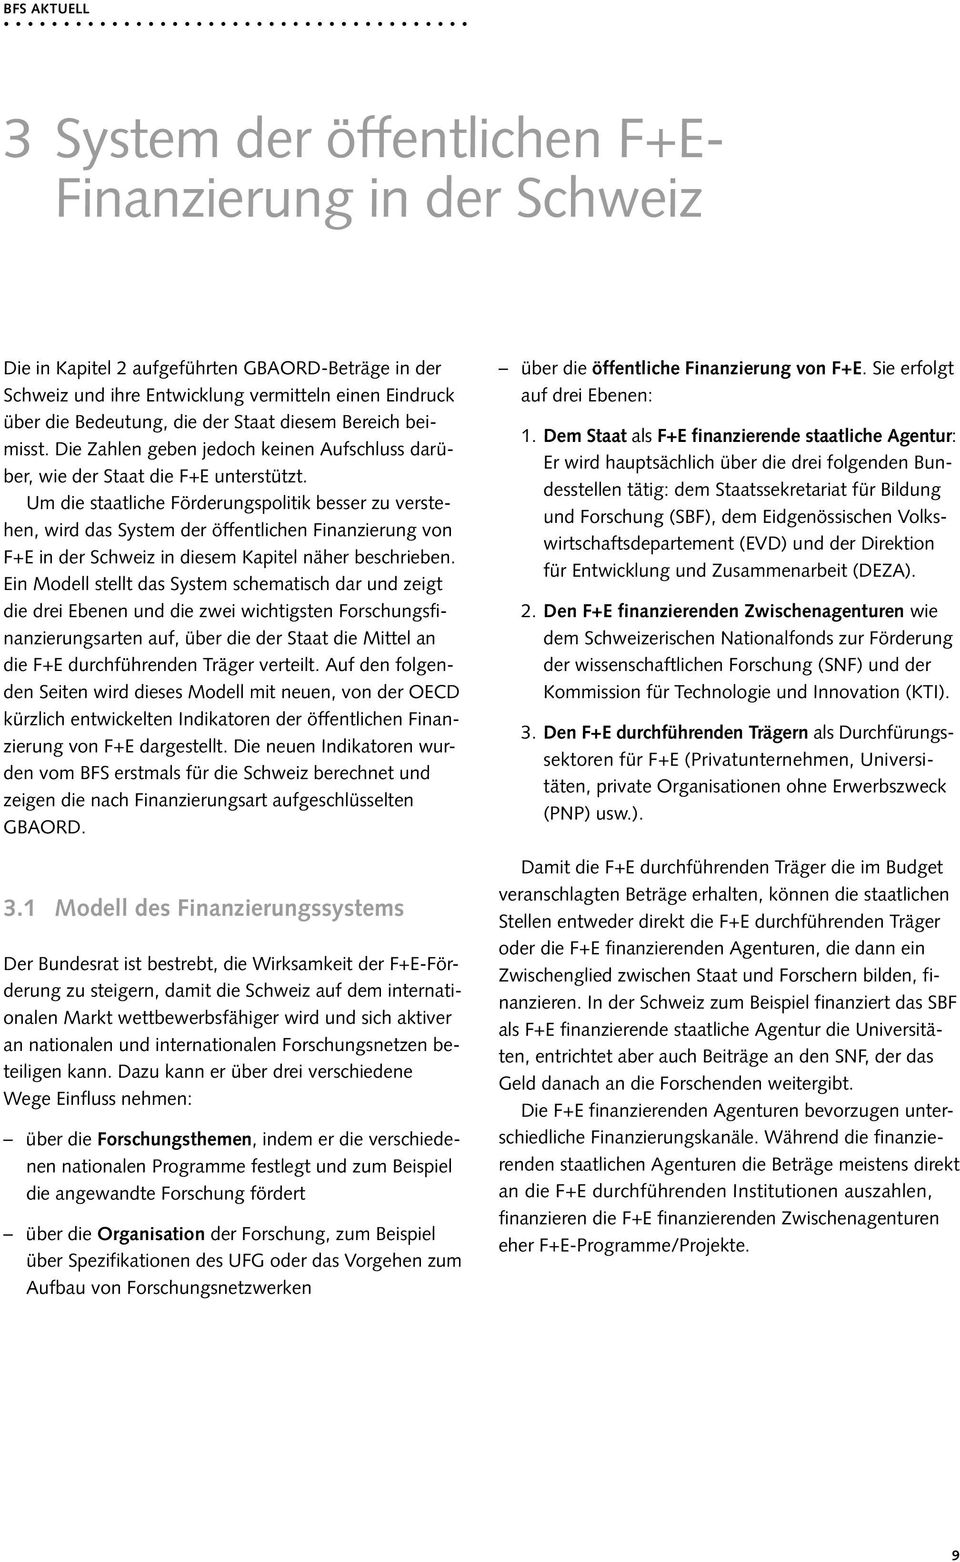 Um die staatliche Förderungspolitik besser zu verstehen, wird das System der öffentlichen Finanzierung von F+E in der Schweiz in diesem Kapitel näher beschrieben.